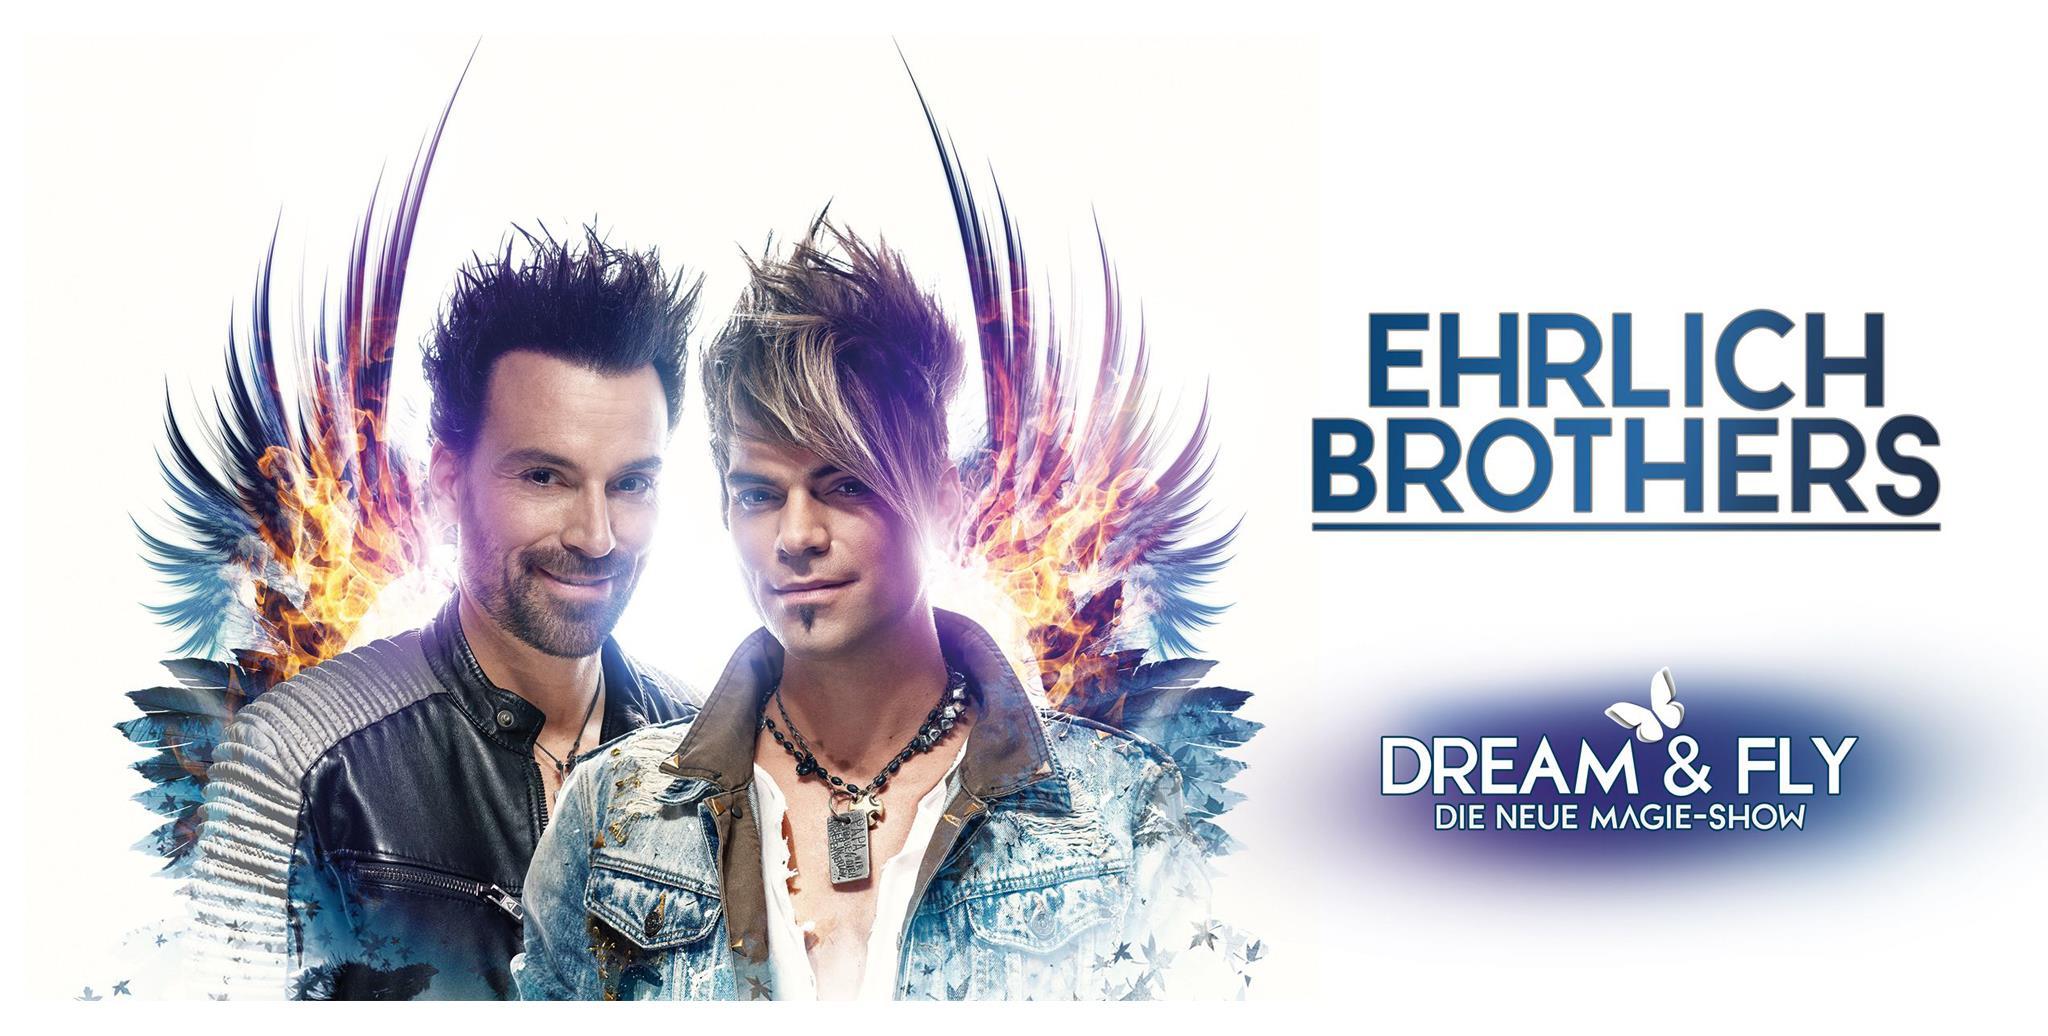 DREAM & FLY - Die neue Magie-Show der Ehrlich Brothers